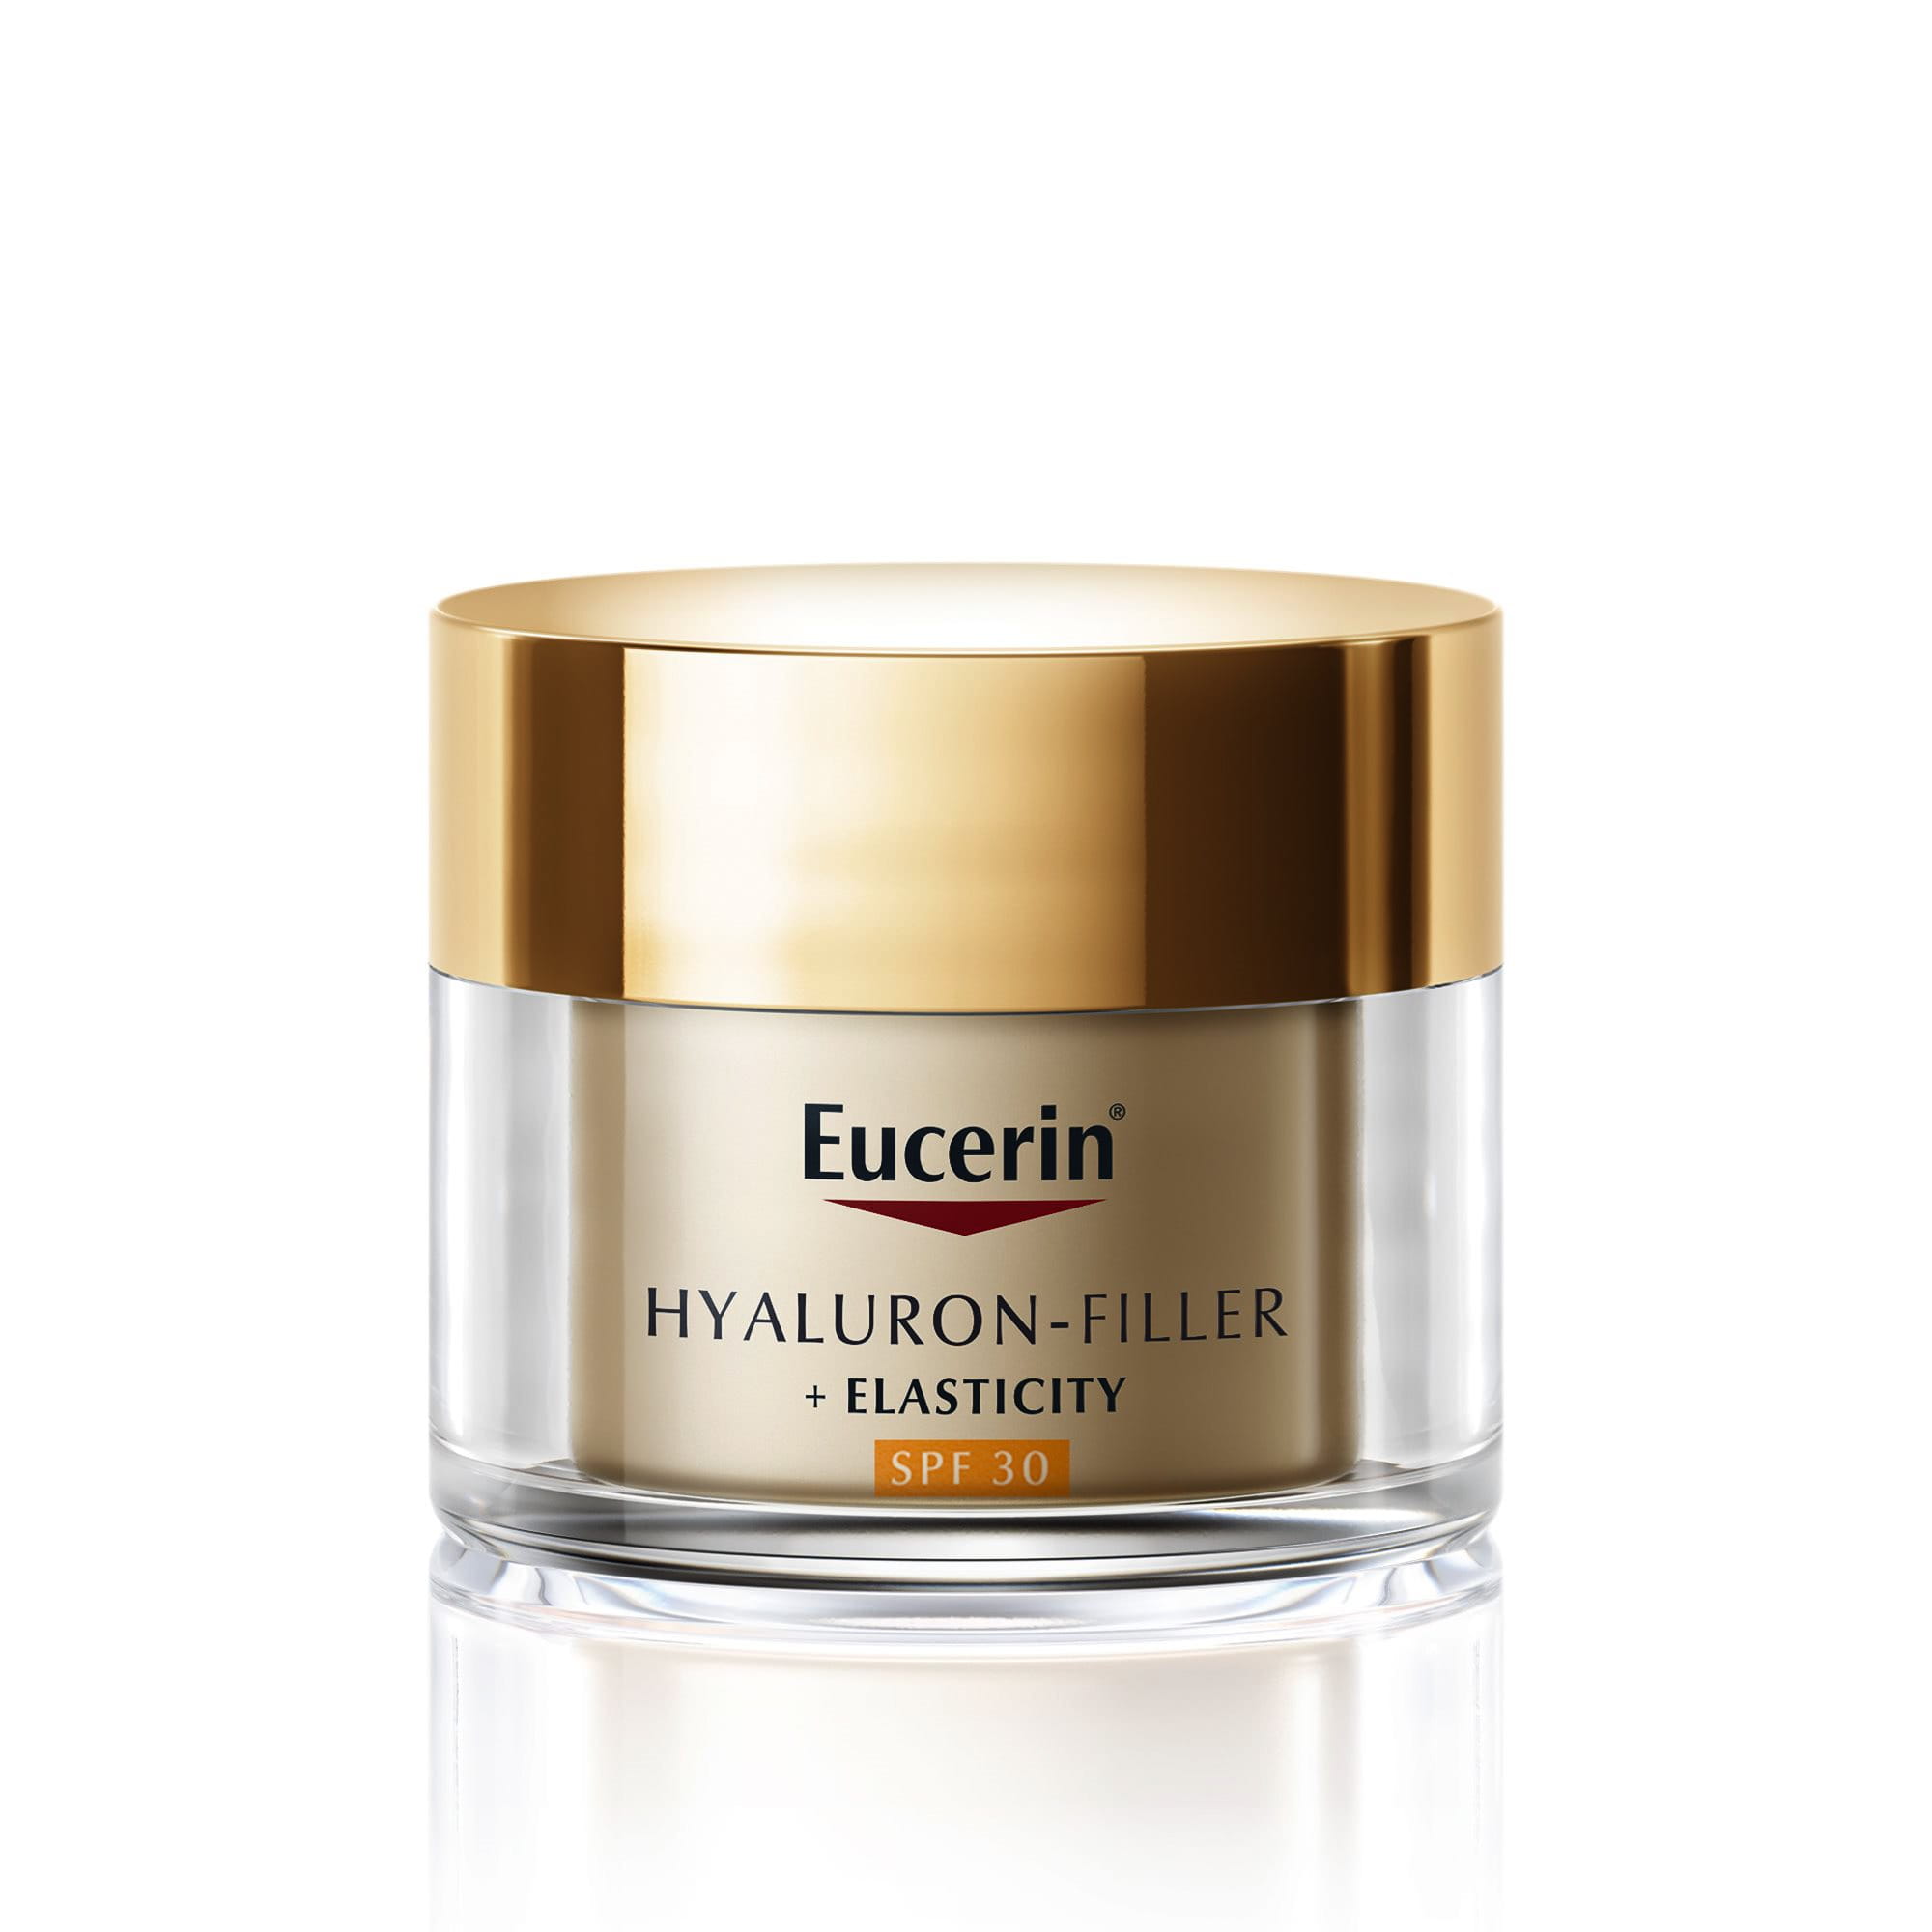 Eucerin Hyaluron-Filler + Elasticity Day SPF 30: best moisturiser for mature skin